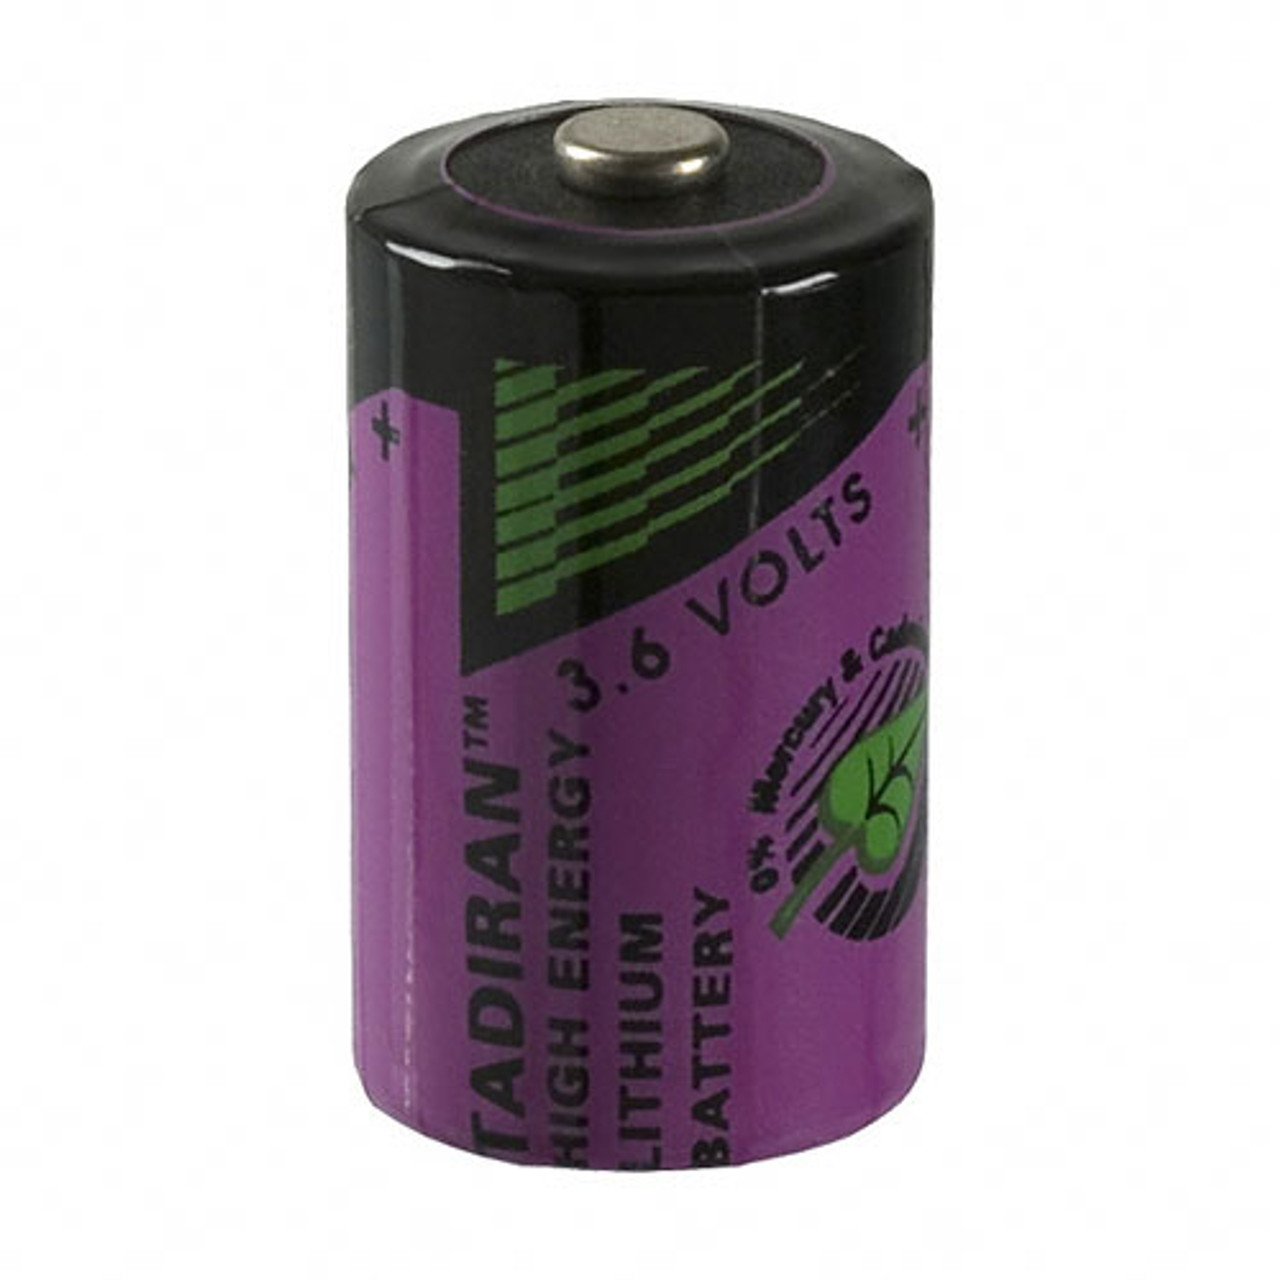 Battery 3. Батарейка Tadiran SL-750/S 3.6V 1/2aa 14250. Tadiran батарейки TL-2150 3.6V. Батарейка литиевая 1/2aa-3.6v. Батарея Tadiran sl750/s 3,6v/1,1ah 1/2aa.